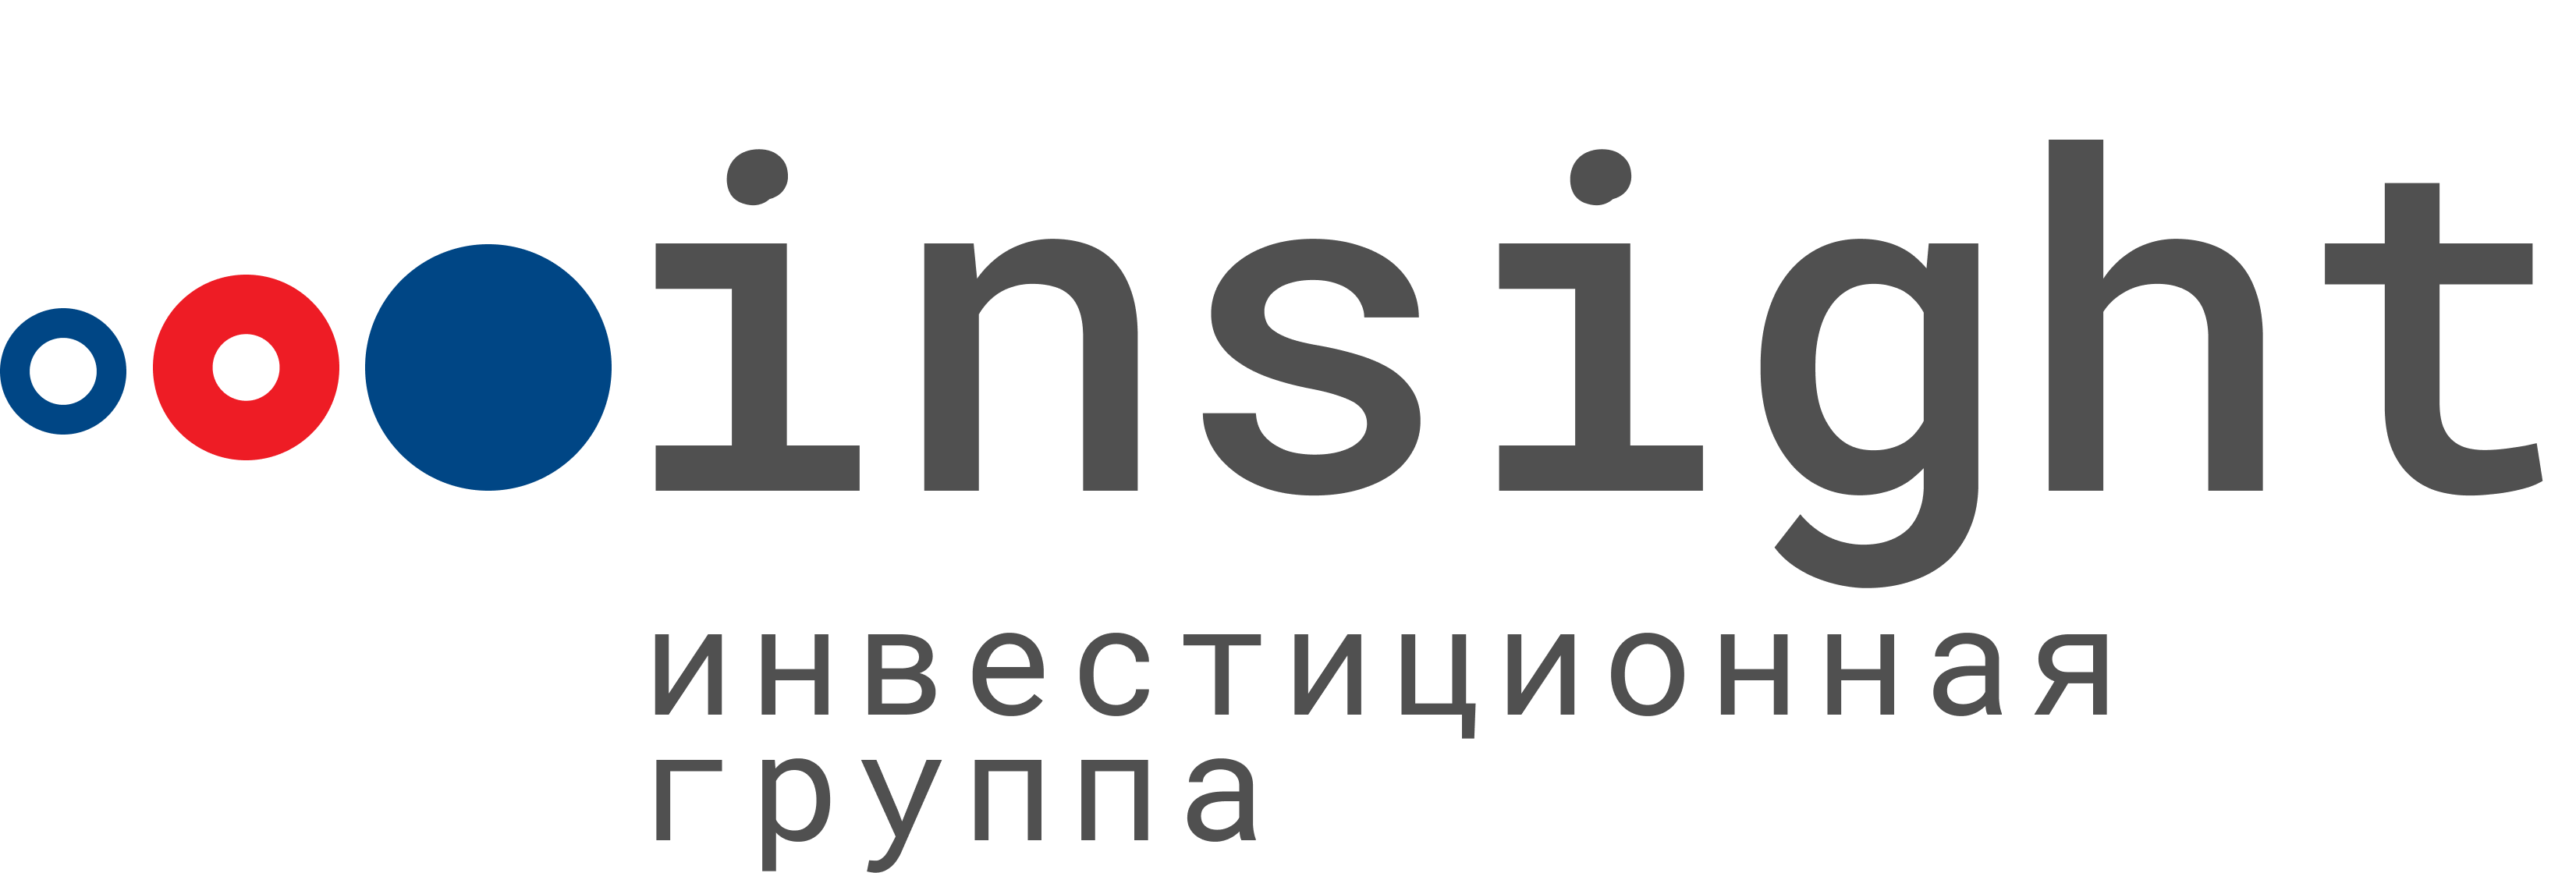 ООО Инсайт. Insight инвестиционная группа. Инвестиционная группа Insight logo. Инвестиционная компания «Инсайт» логотип. Ооо инвестиционная группа